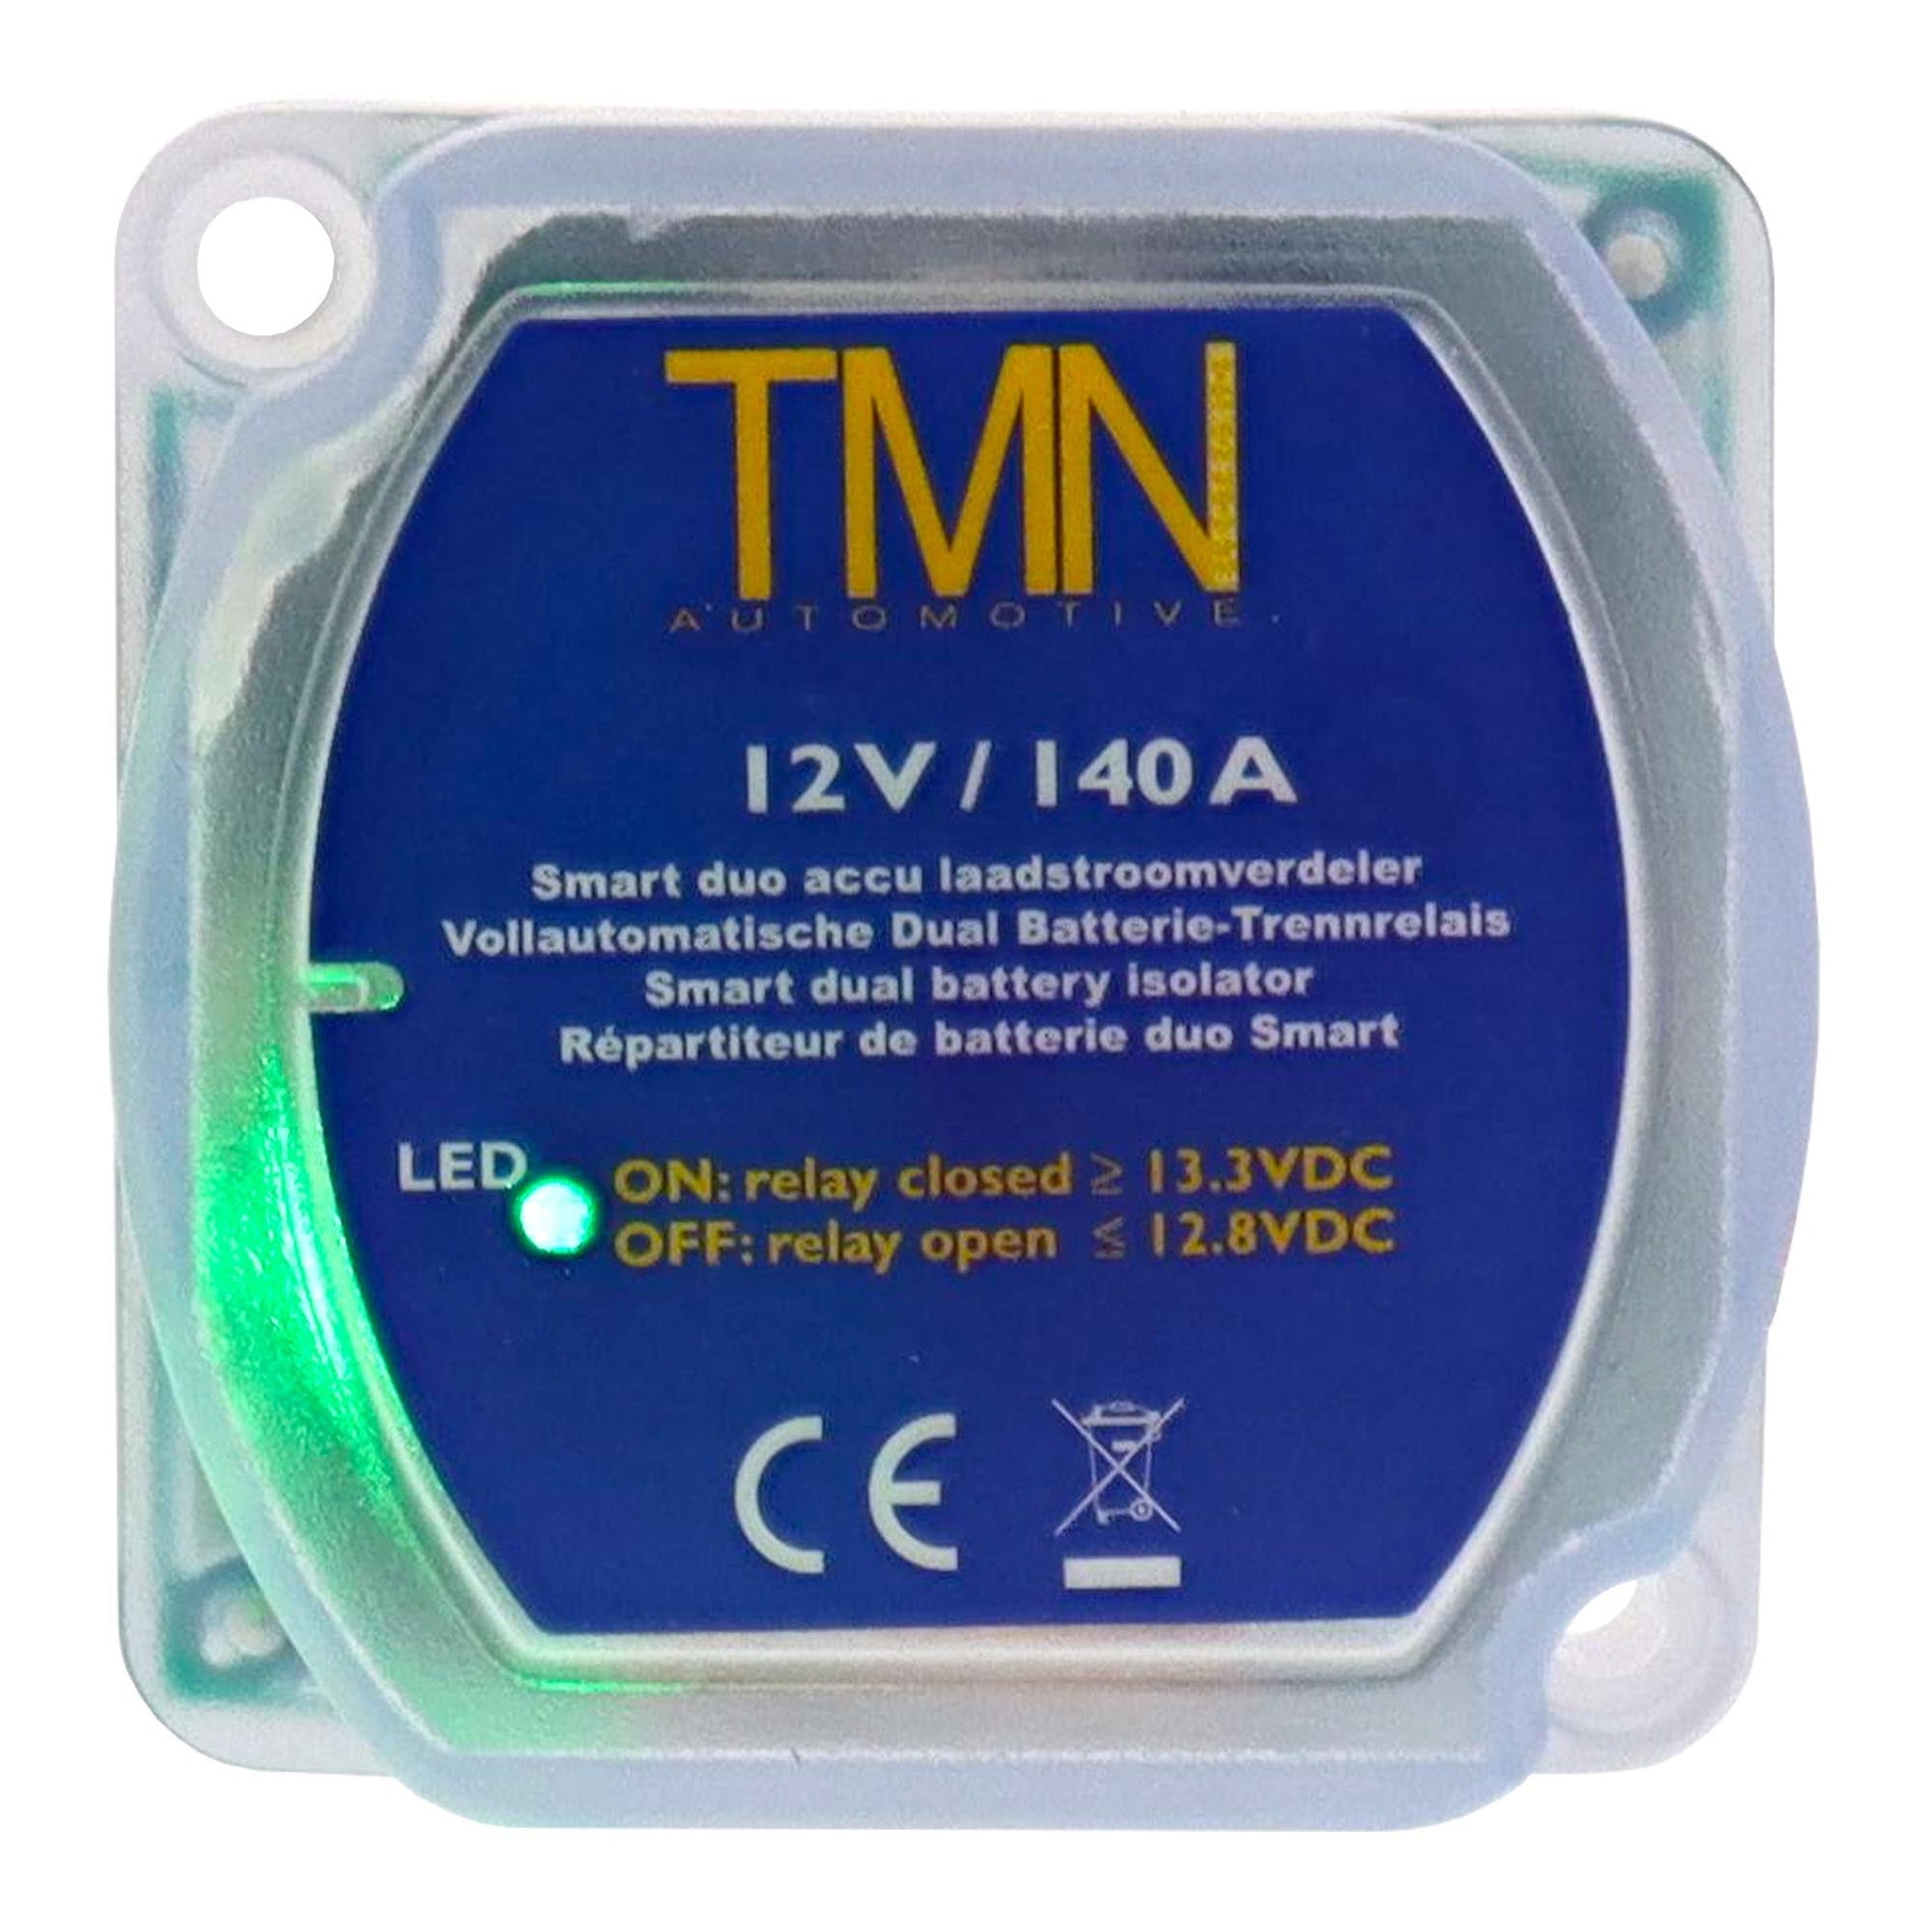 BSR 20-3 Batterie-Trennrelais 12V/140A. Set "3m Kabel" - TMN-shop.de